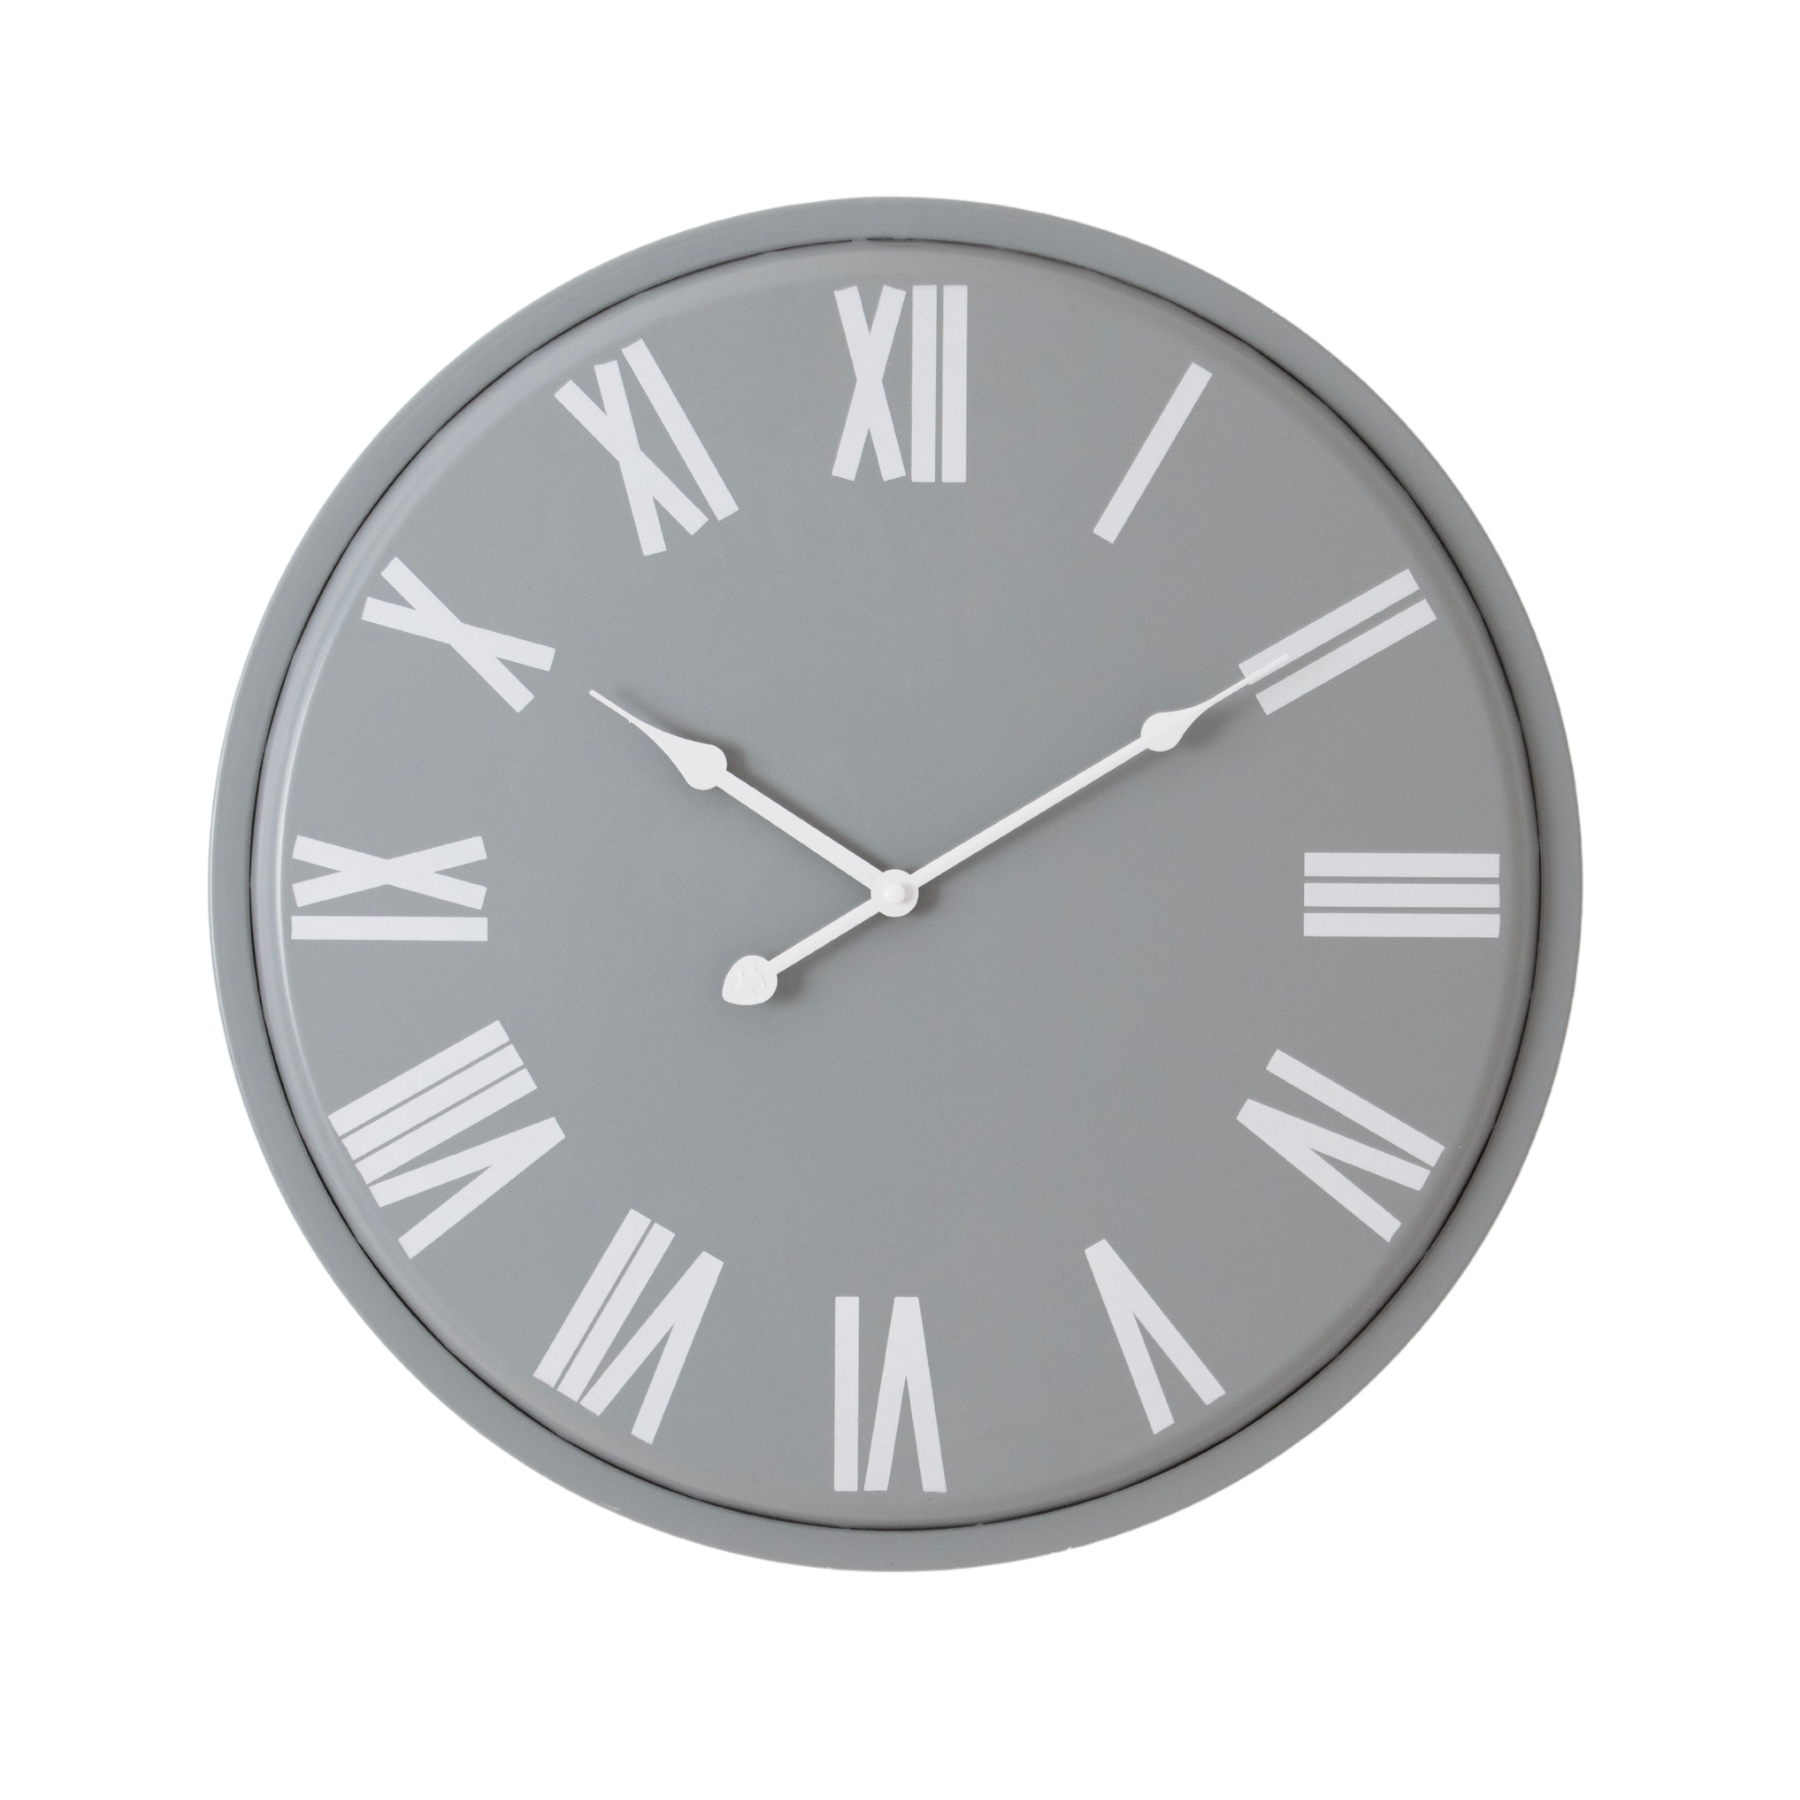 Rothay Wall Clock - Image 1